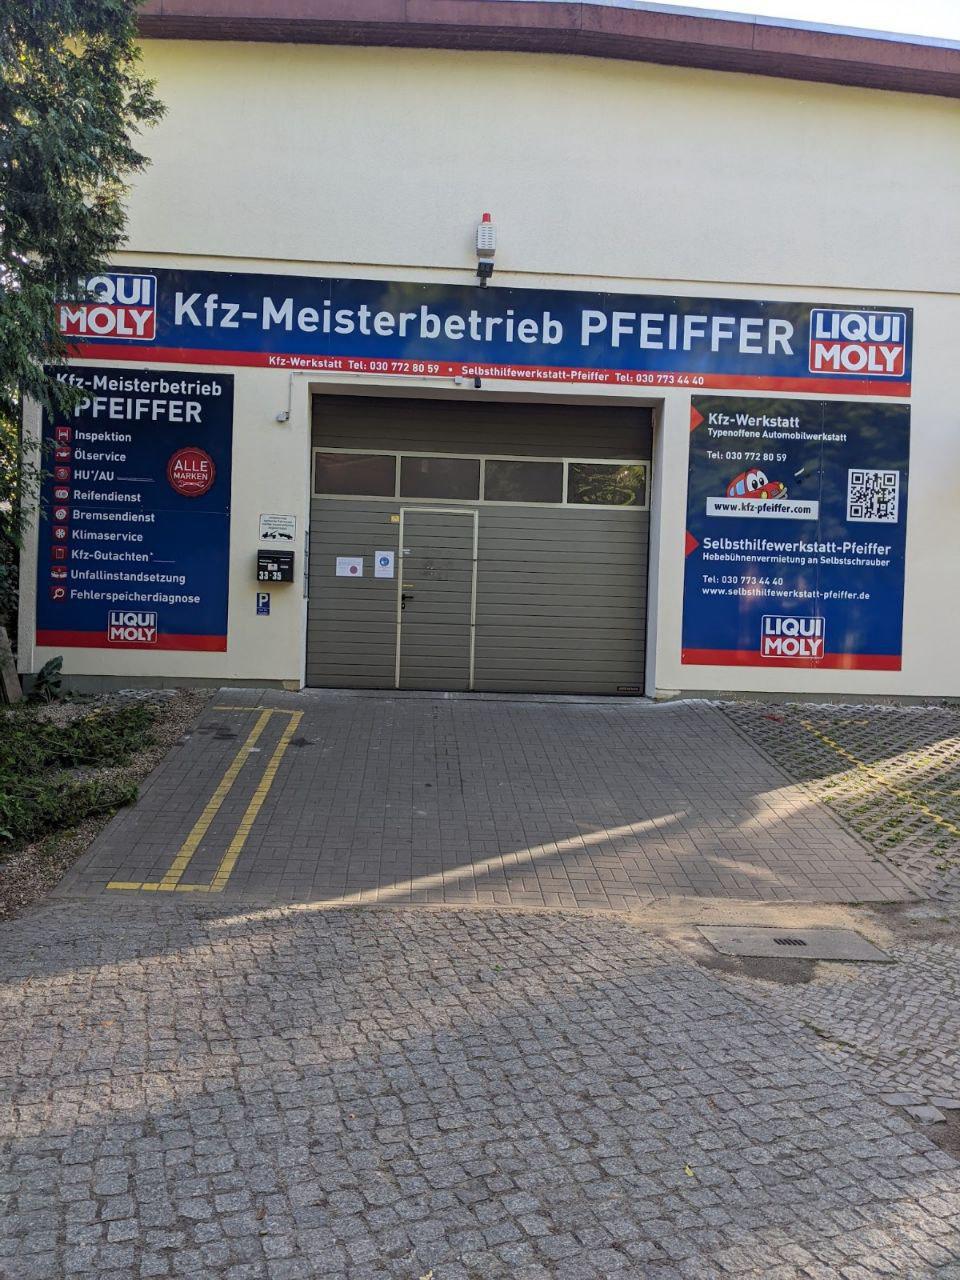 Kfz.-Meisterbetrieb Pfeiffer, Autoreparaturwerkstatt (Jürgen und Marcus Pfeiffer GbR), Elisabethstraße 33-35 in Berlin